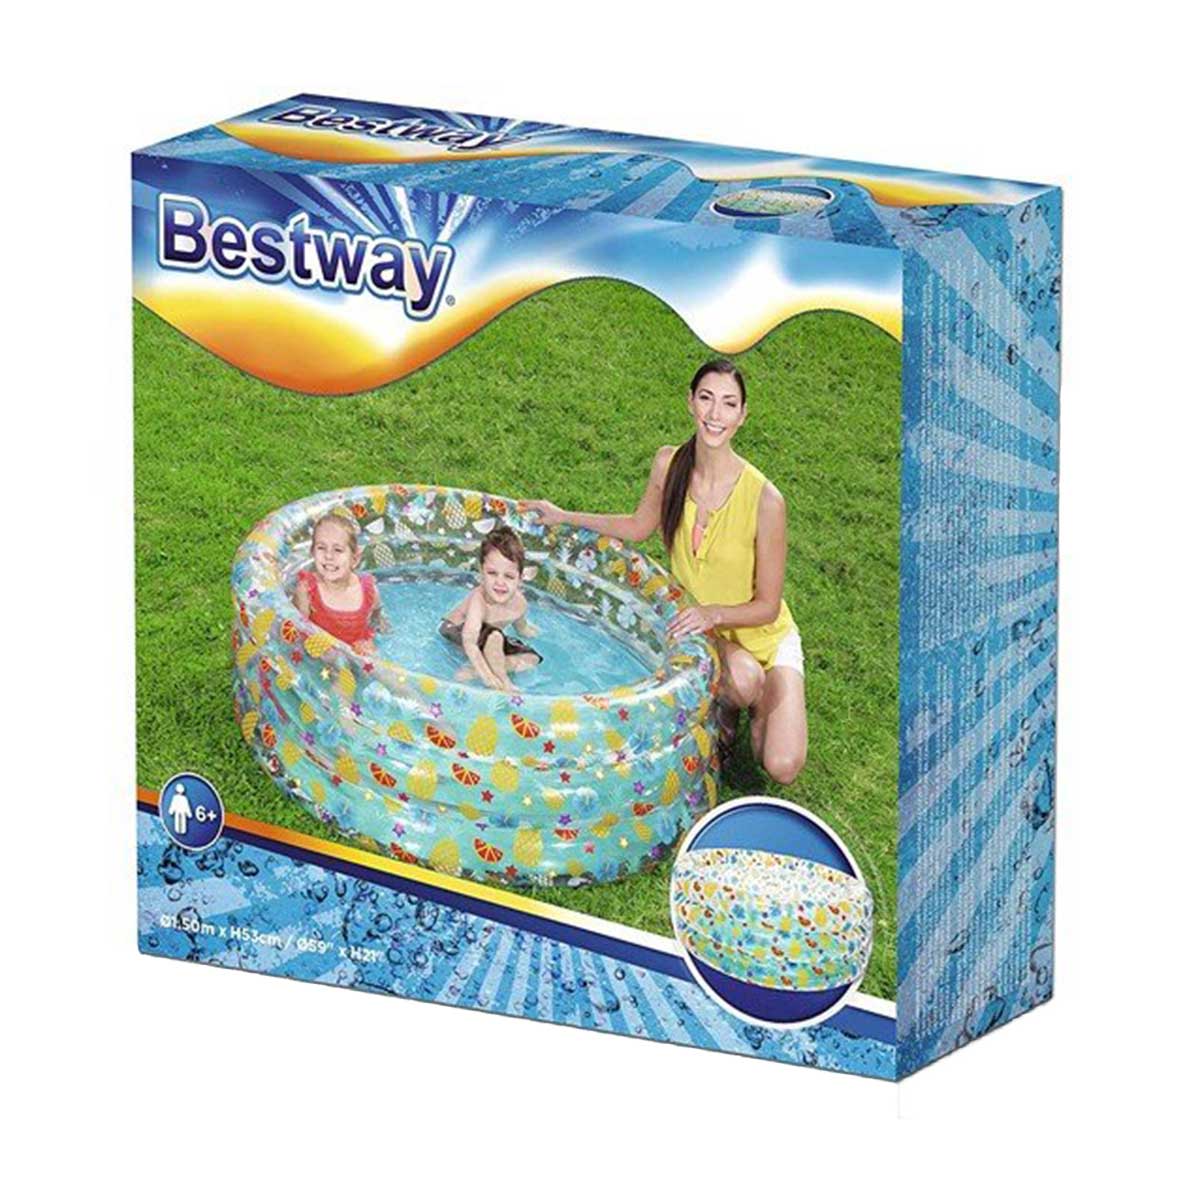 Bestway - Tropical Play Pool